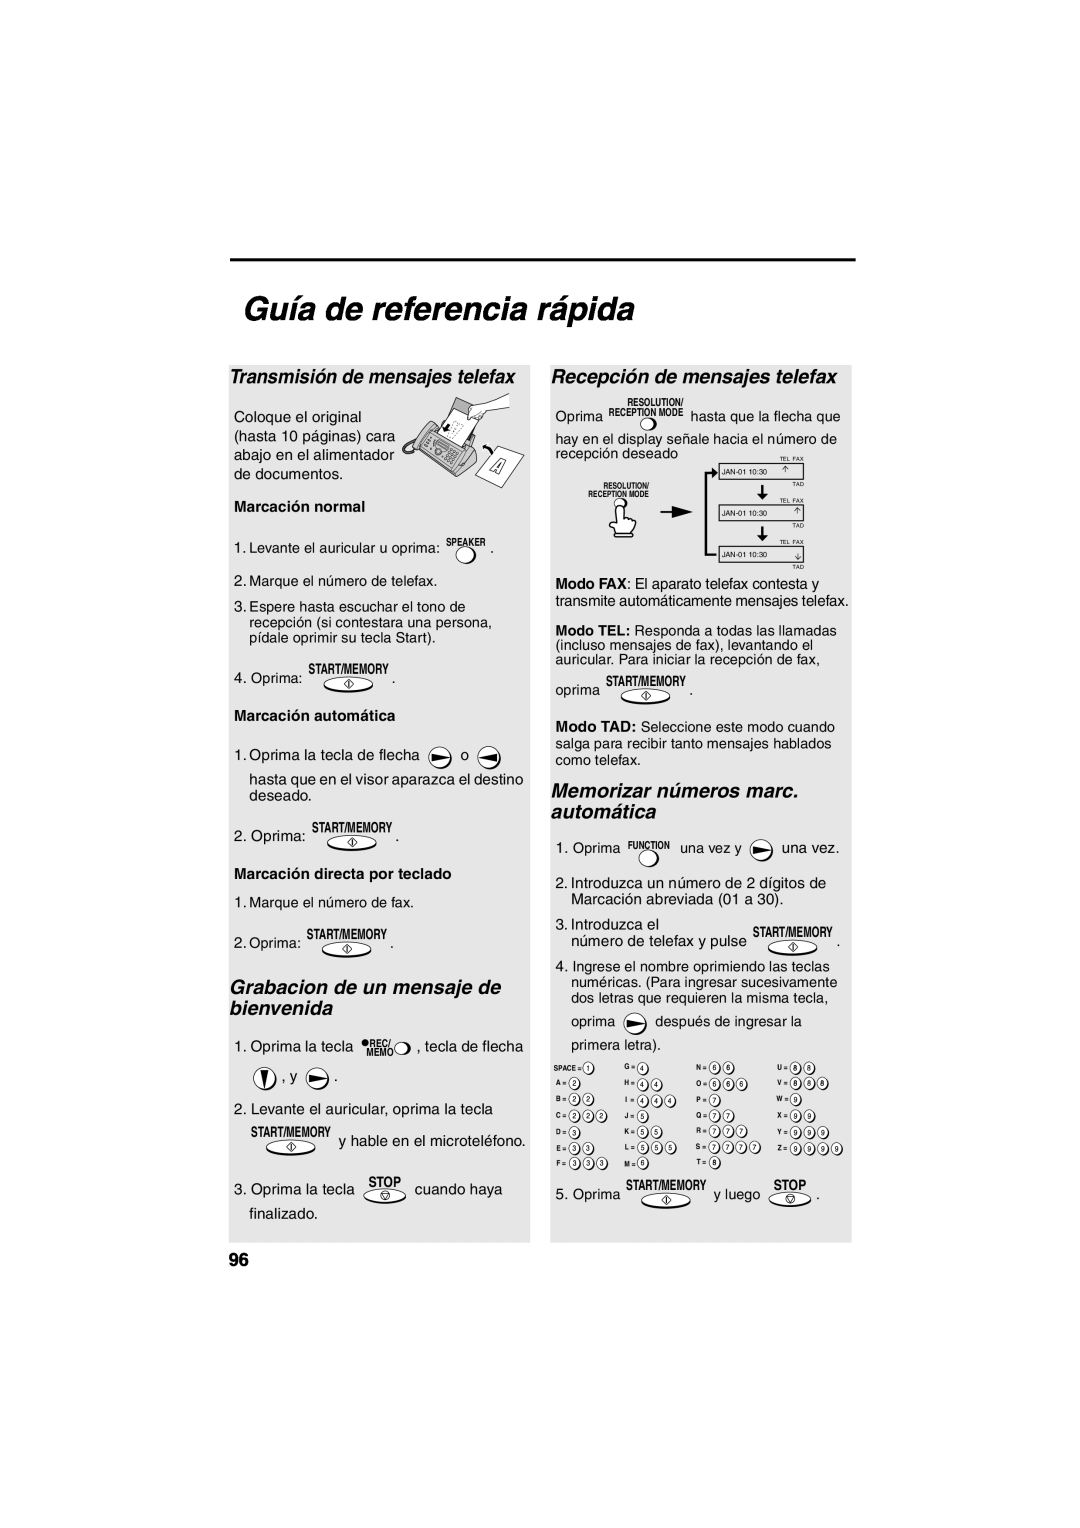 Sharp UX-A260 manual Guía de referencia rápida, Transmisión de mensajes telefax, Grabacion de un mensaje de bienvenida 